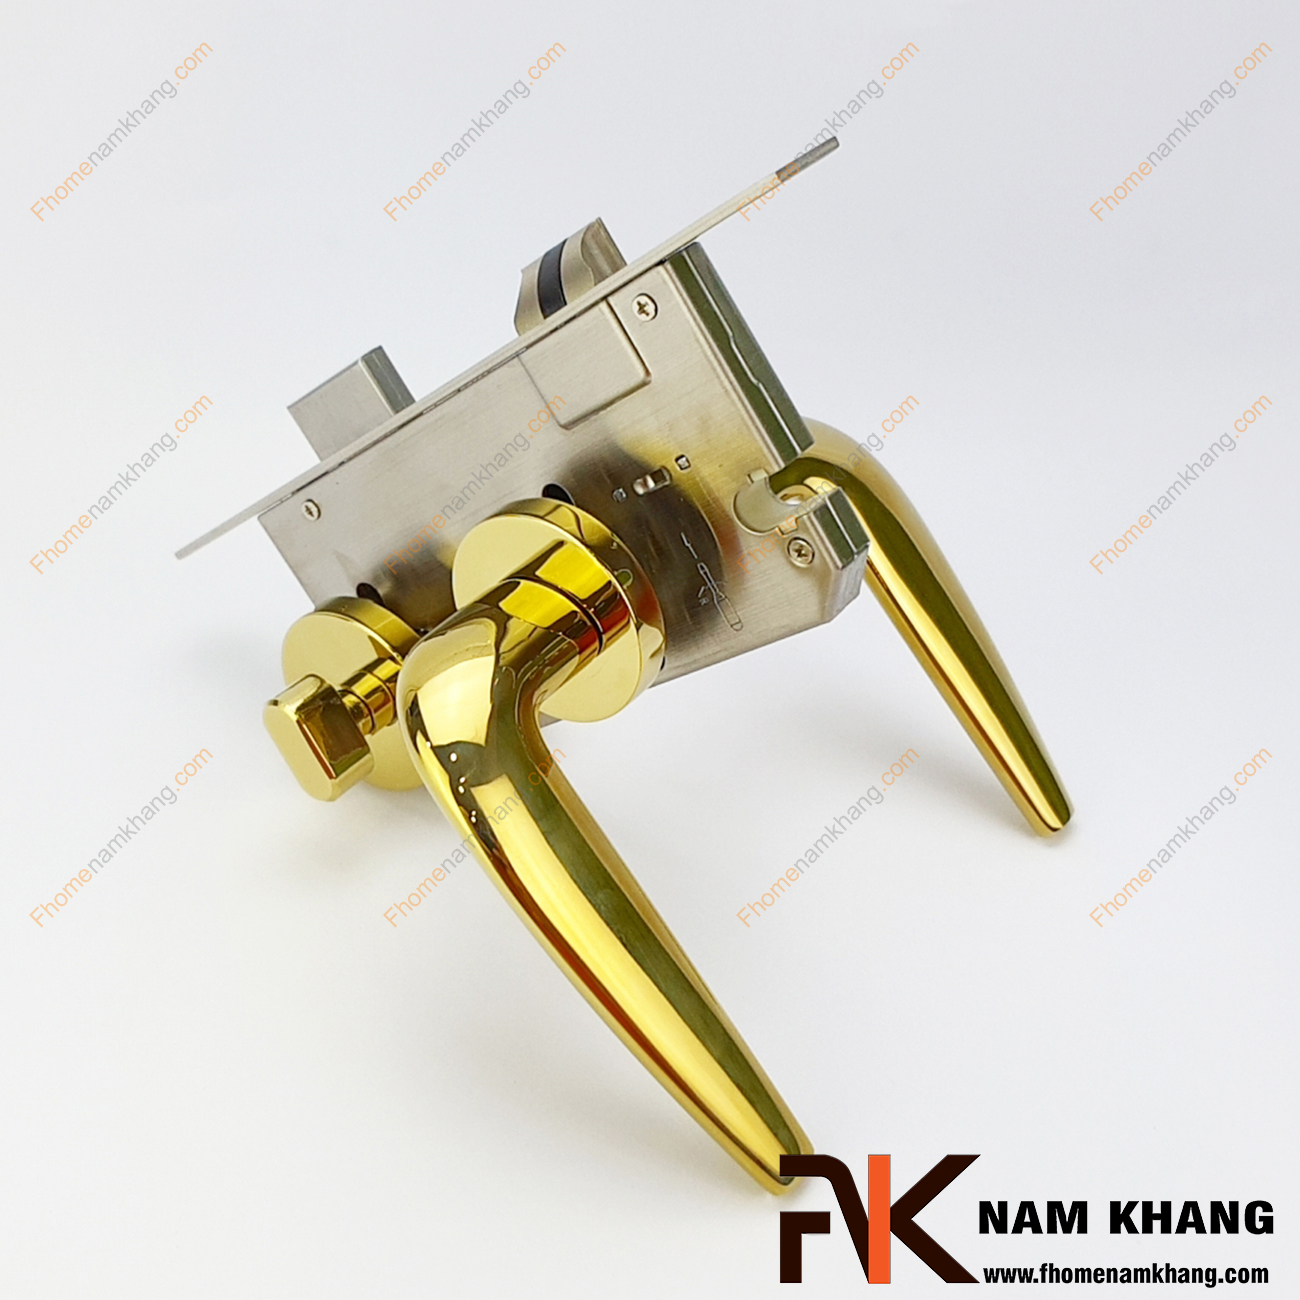 Khóa cửa phân thể hiện đại màu vàng bóng NK574-PVD có thiết kế đơn giản, nhỏ gọn và phần ốp khóa, tay gạt riêng biệt, tạo được sự nổi bật độc đáo.